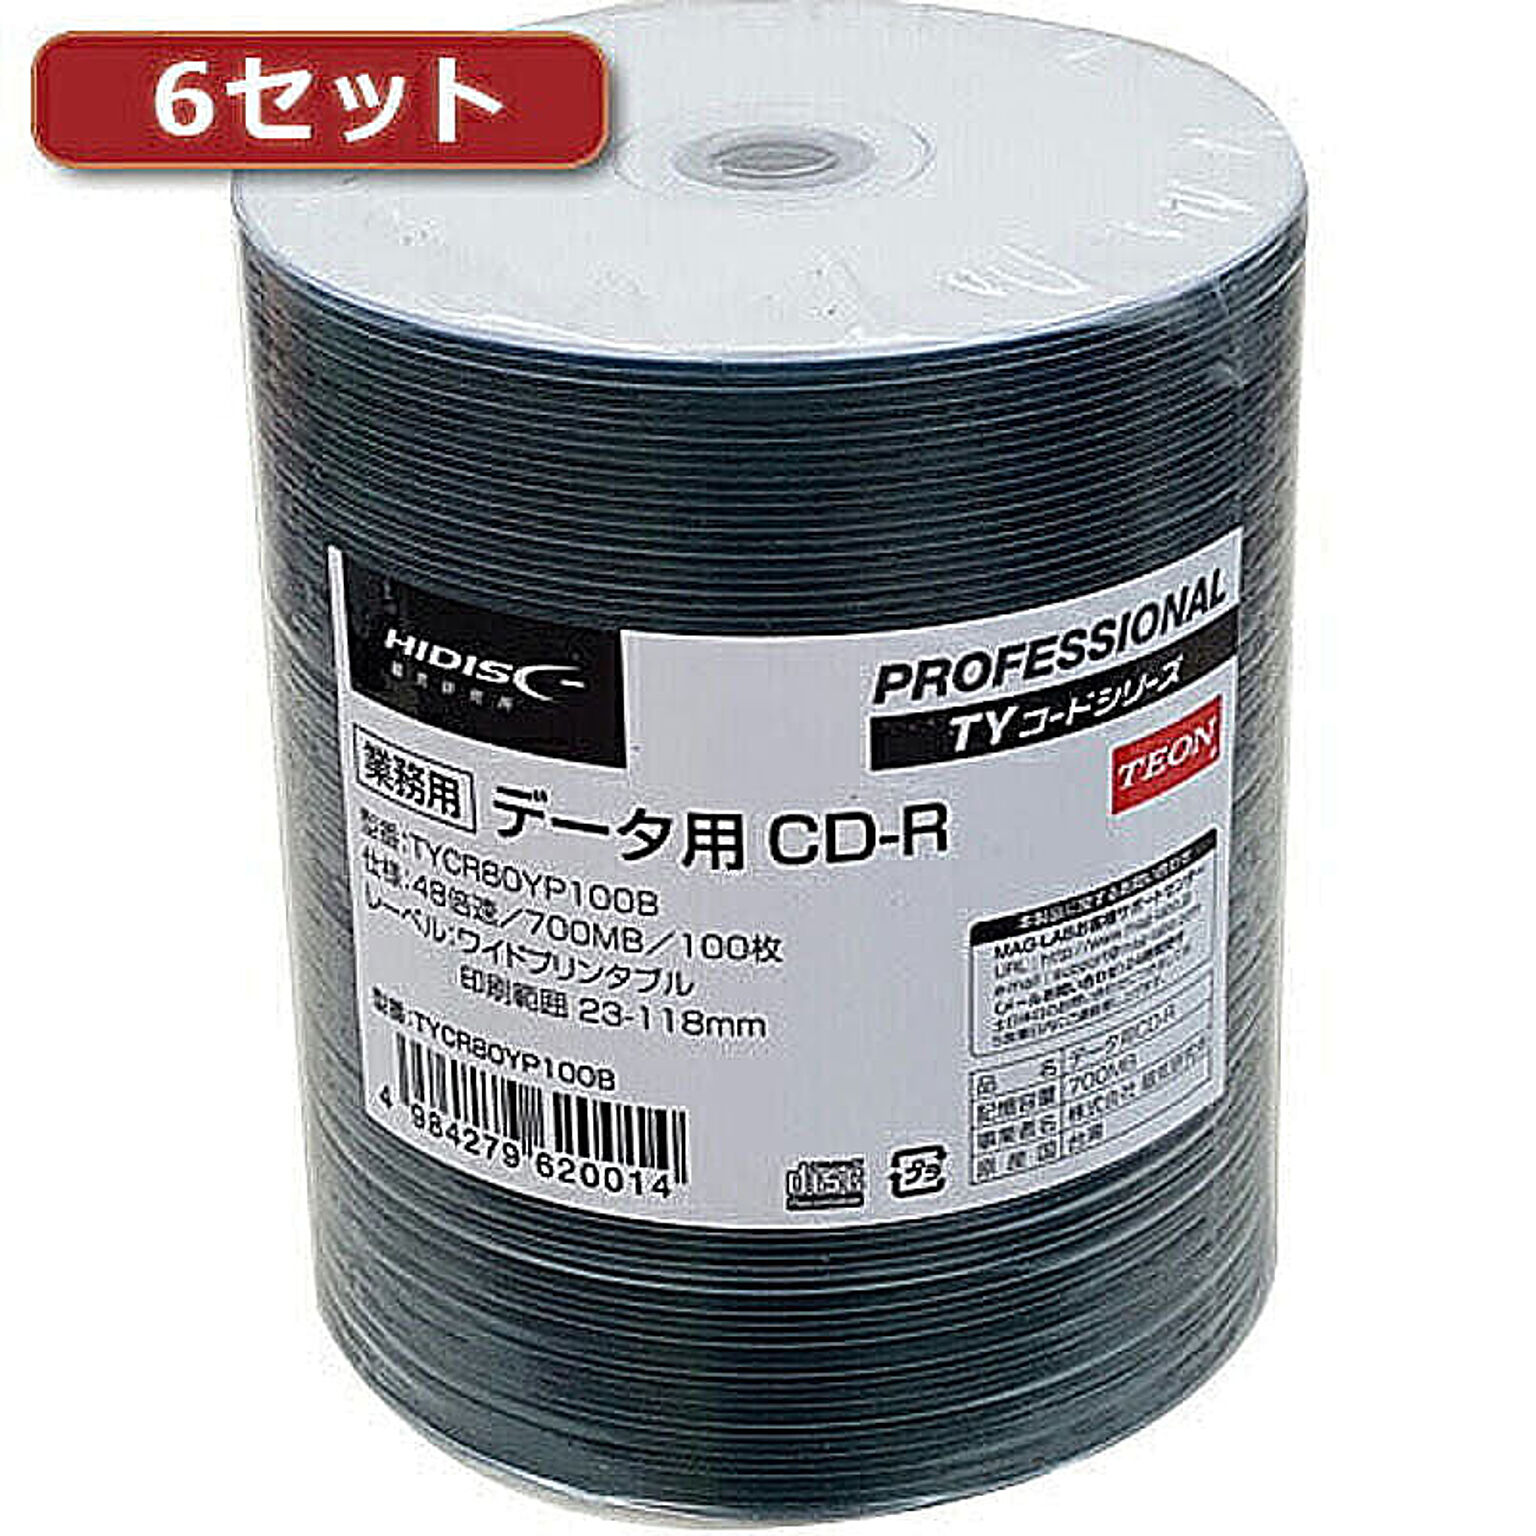 6セットHI DISC CD-R(データ用)高品質 100枚入 TYCR80YP100BX6 管理No. 4560352838202